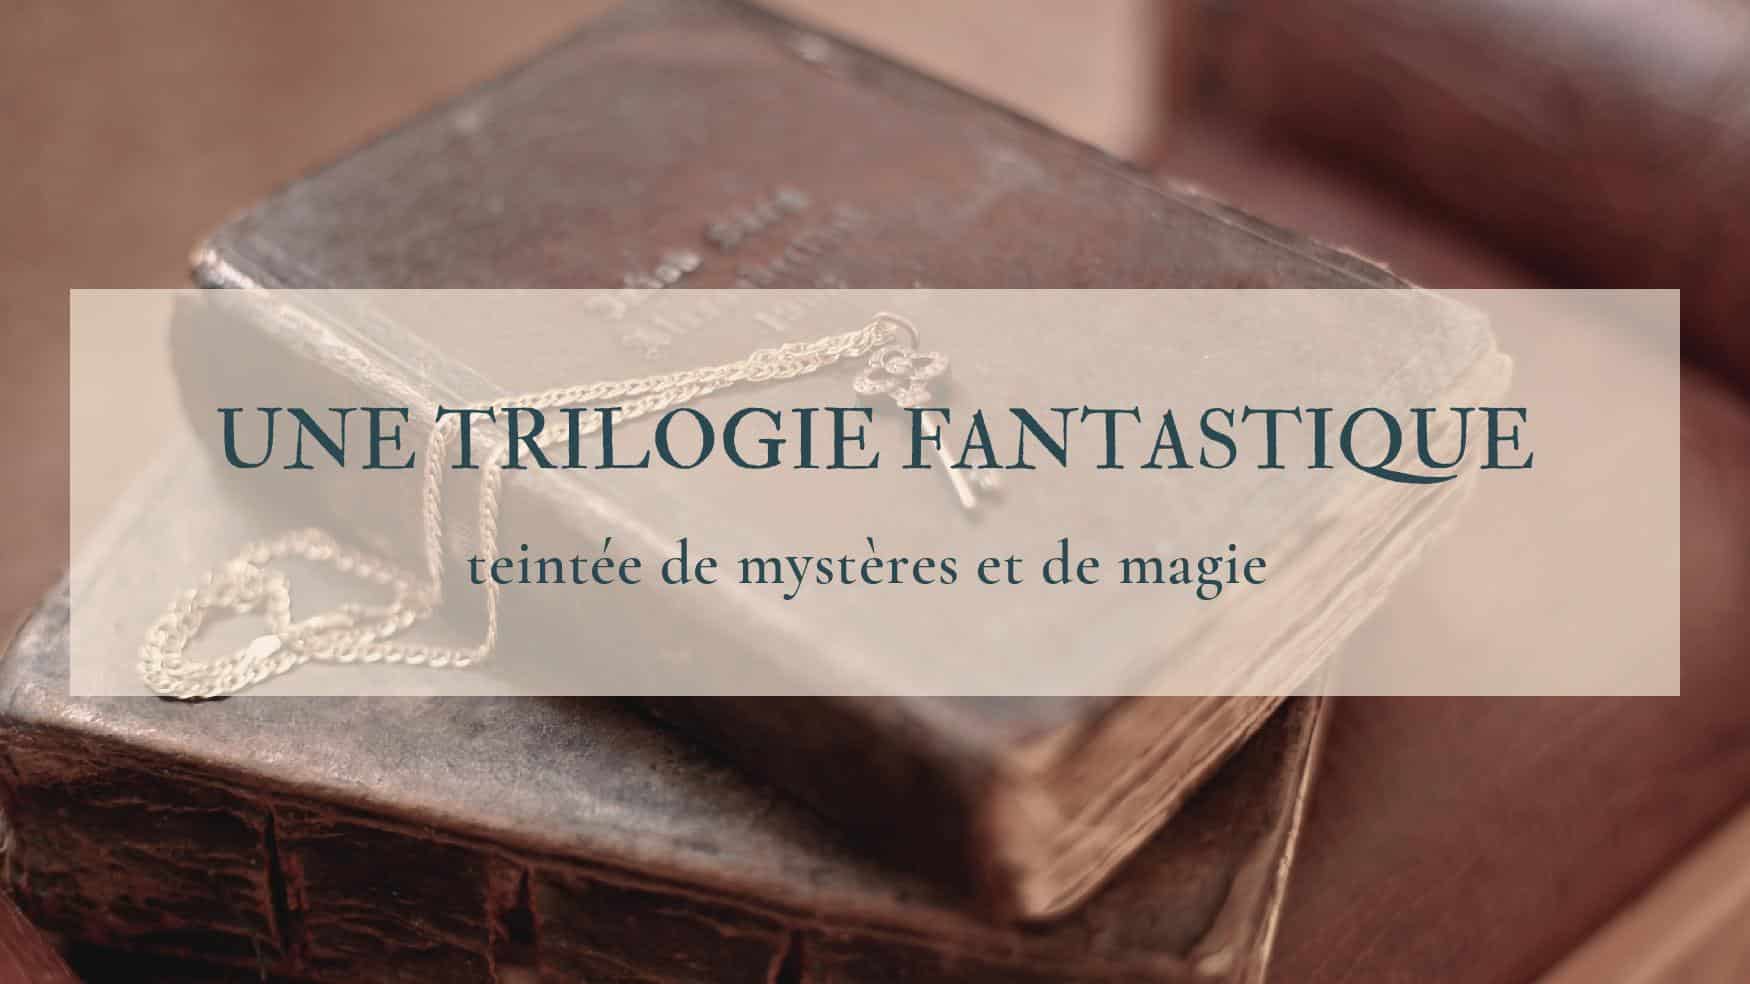 Au-delà des bornes, une trilogie fantastique de mystères et de magie